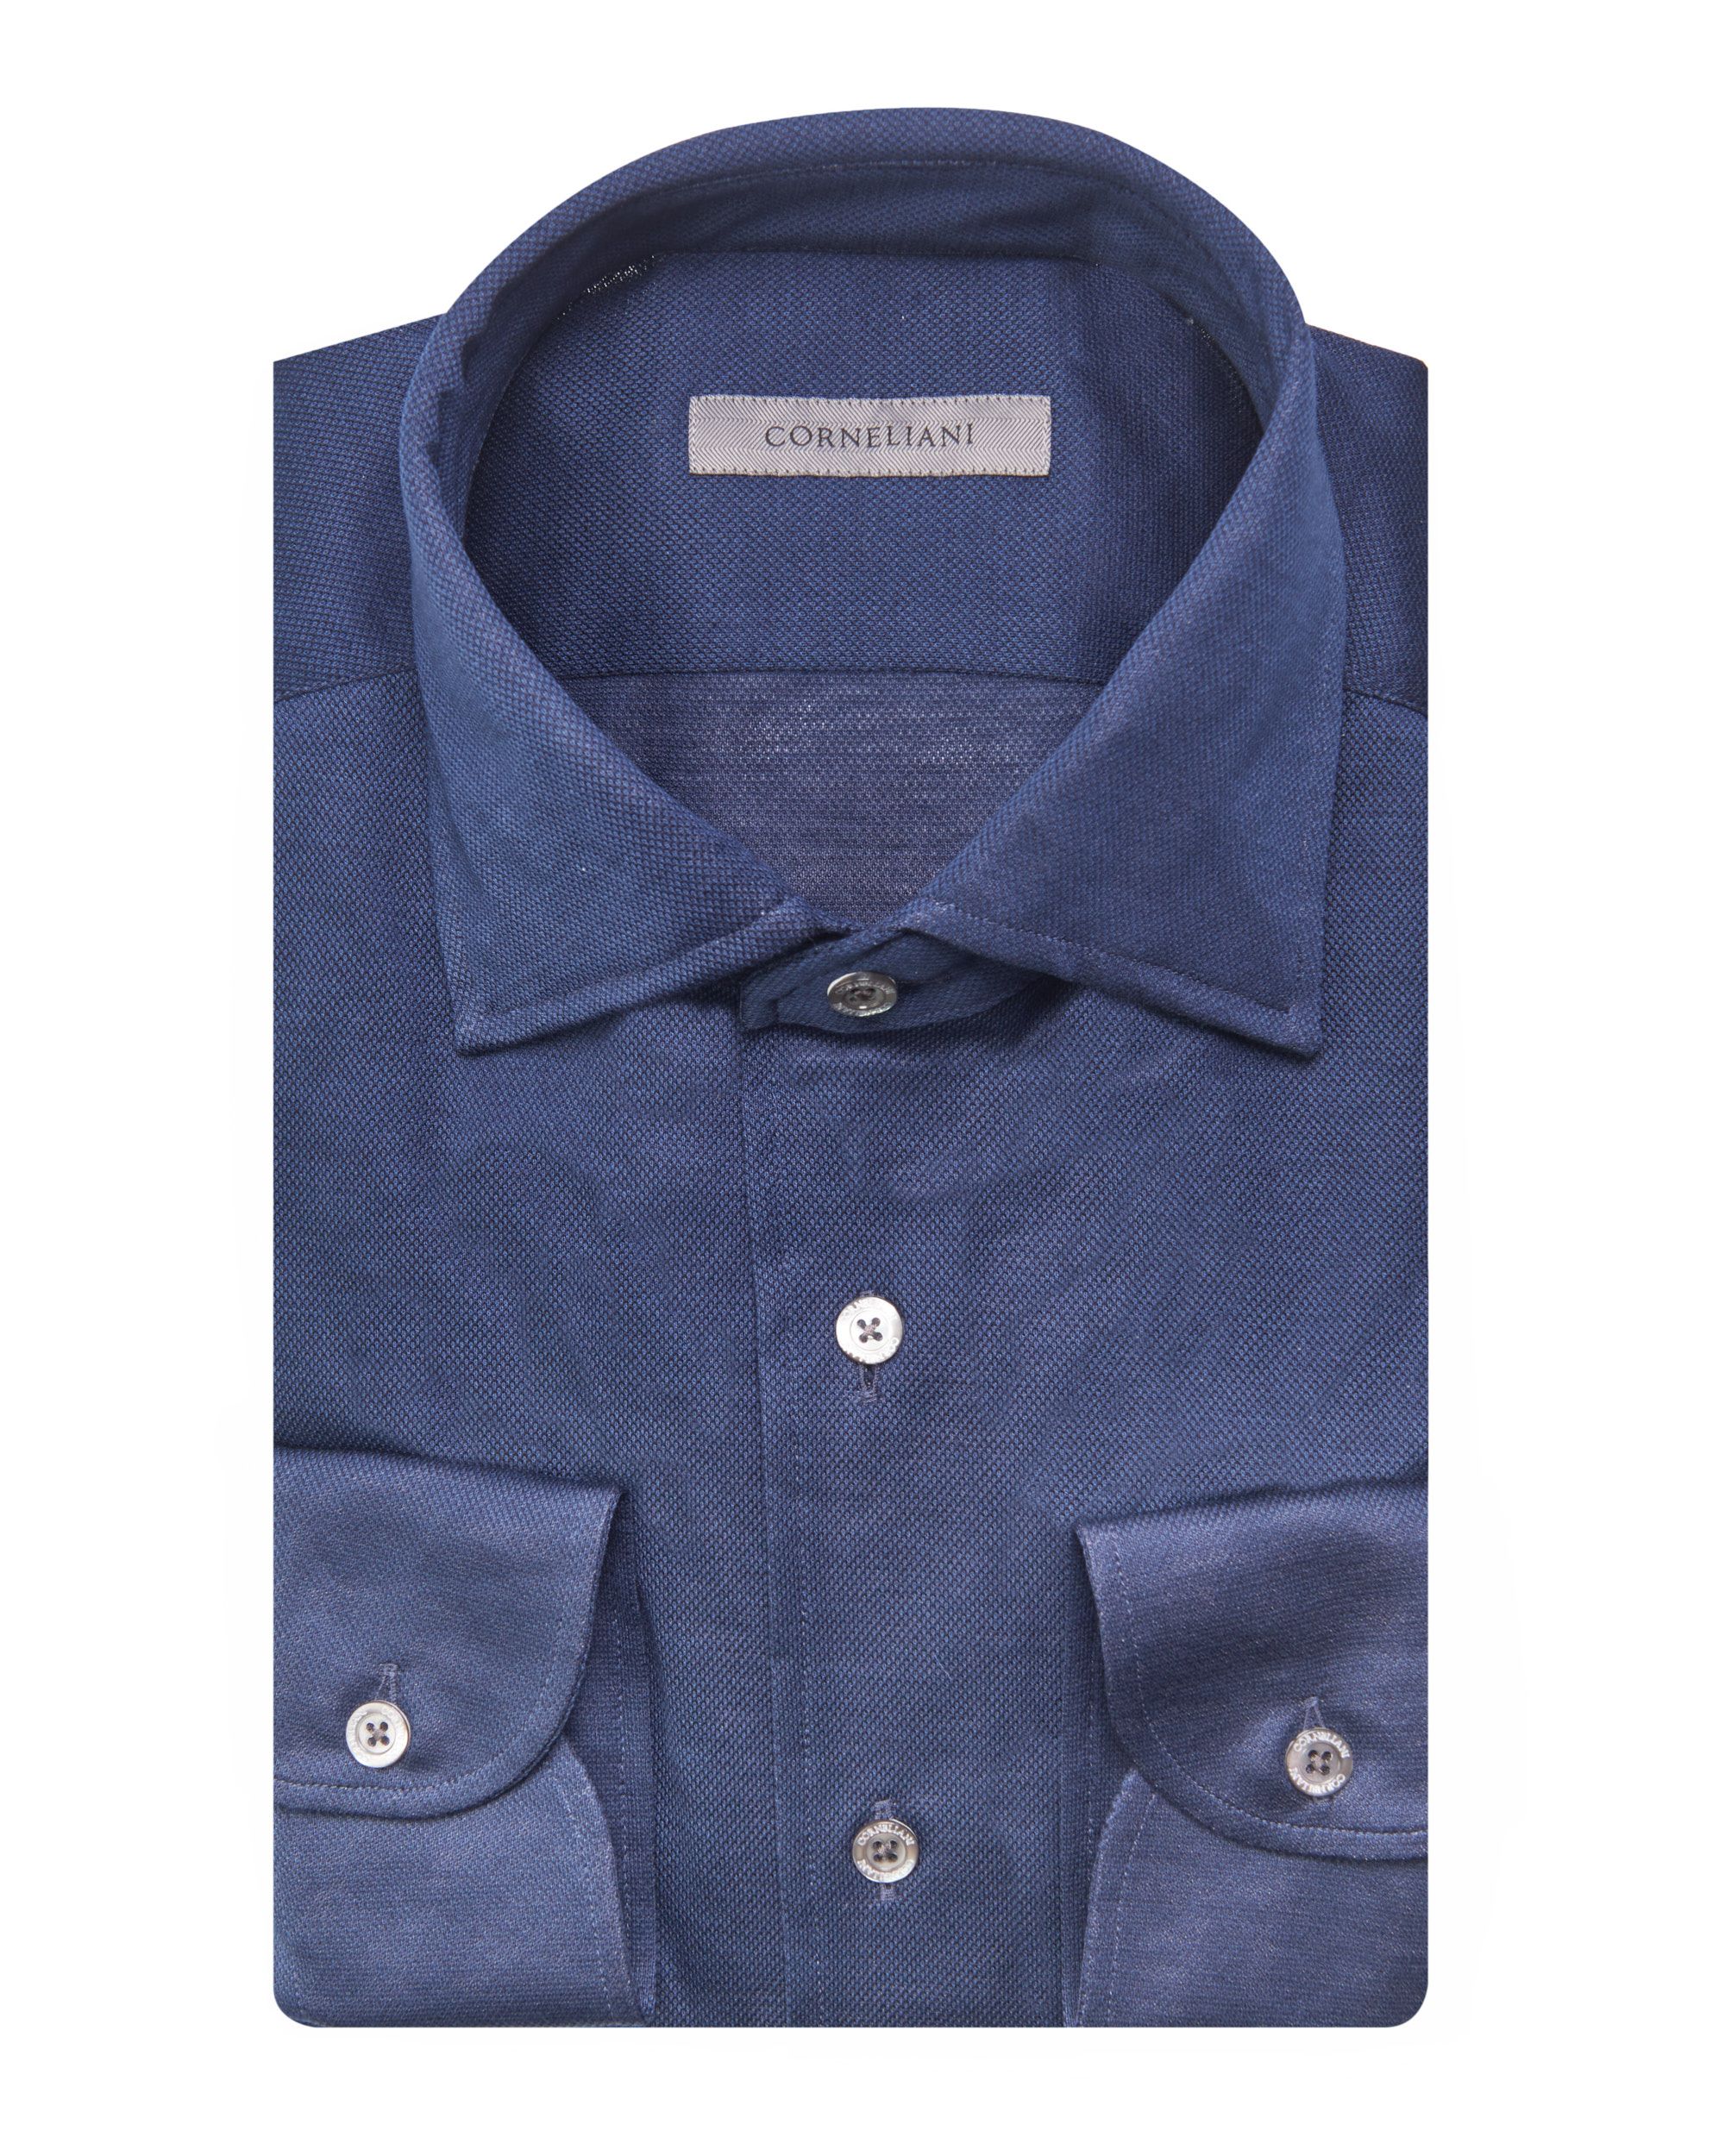 Corneliani Overhemd LM Donker blauw 078619-001-39